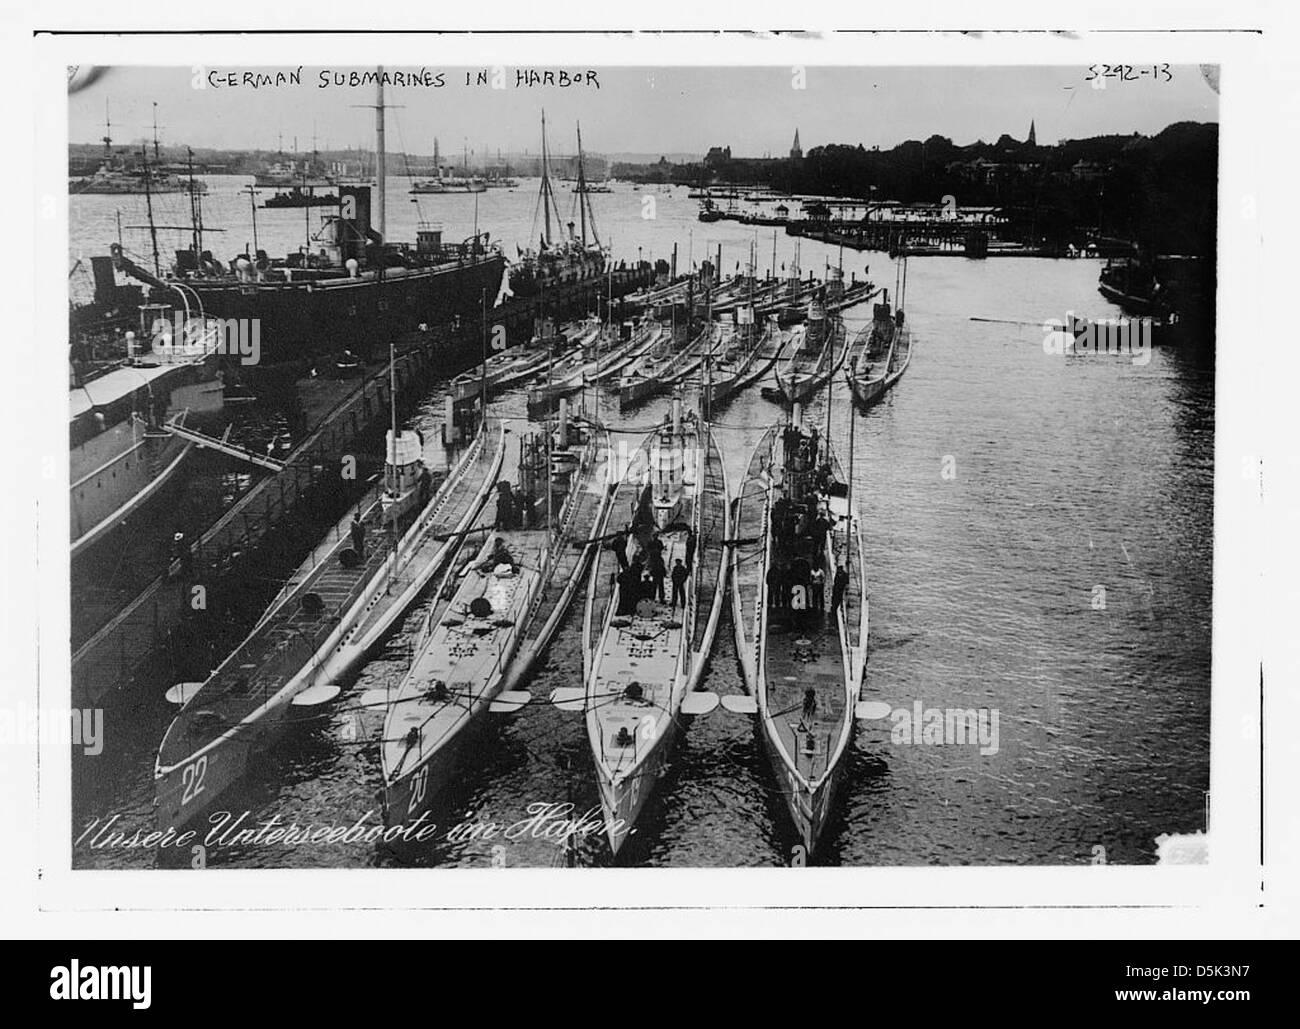 German Submarines in harbor (LOC) Stock Photo